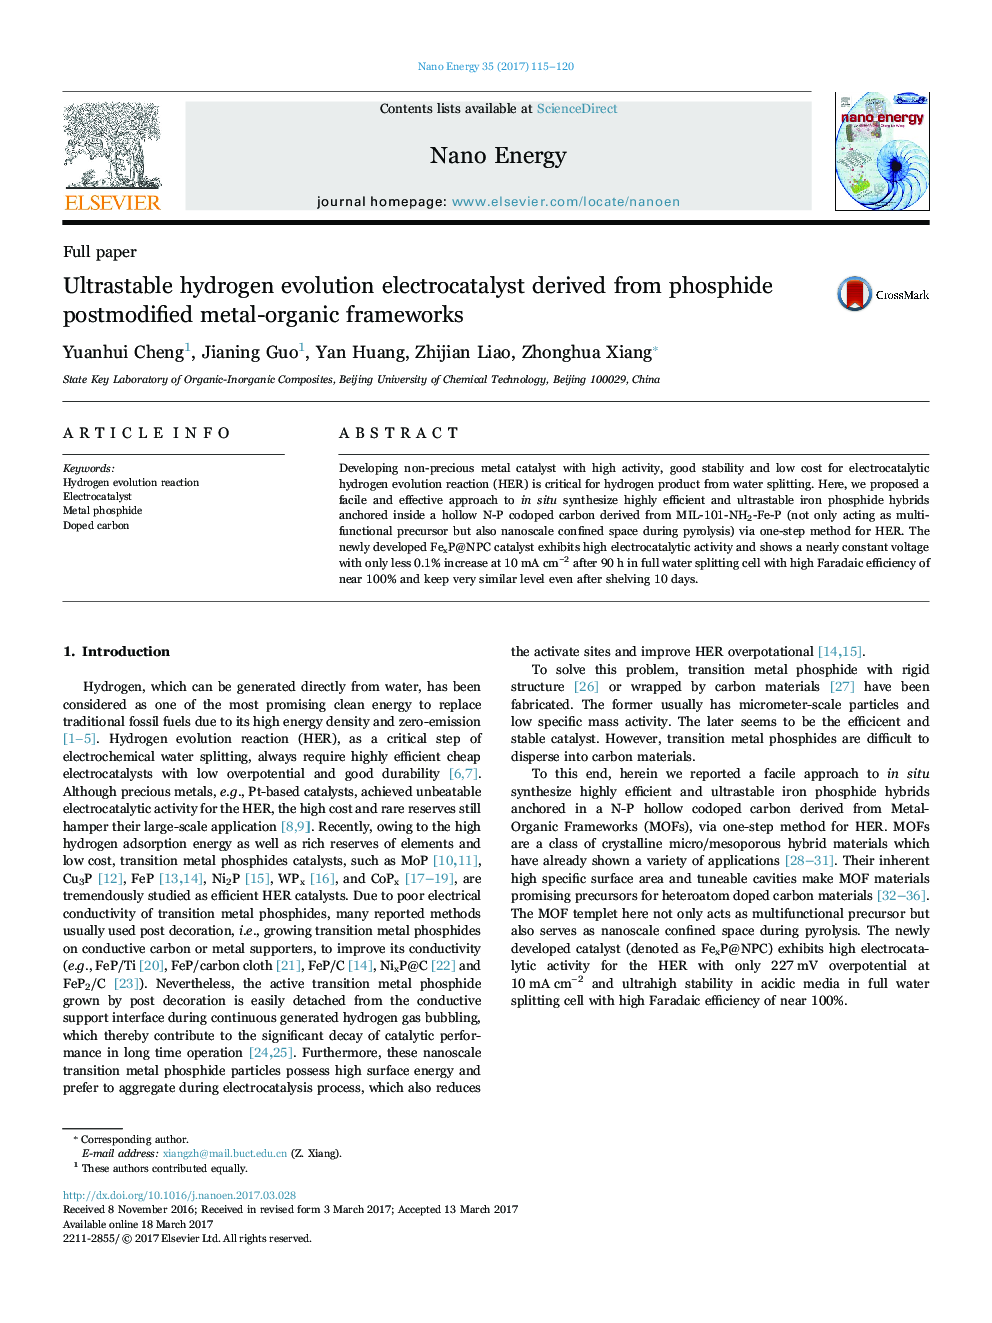 Ultrastable hydrogen evolution electrocatalyst derived from phosphide postmodified metal-organic frameworks